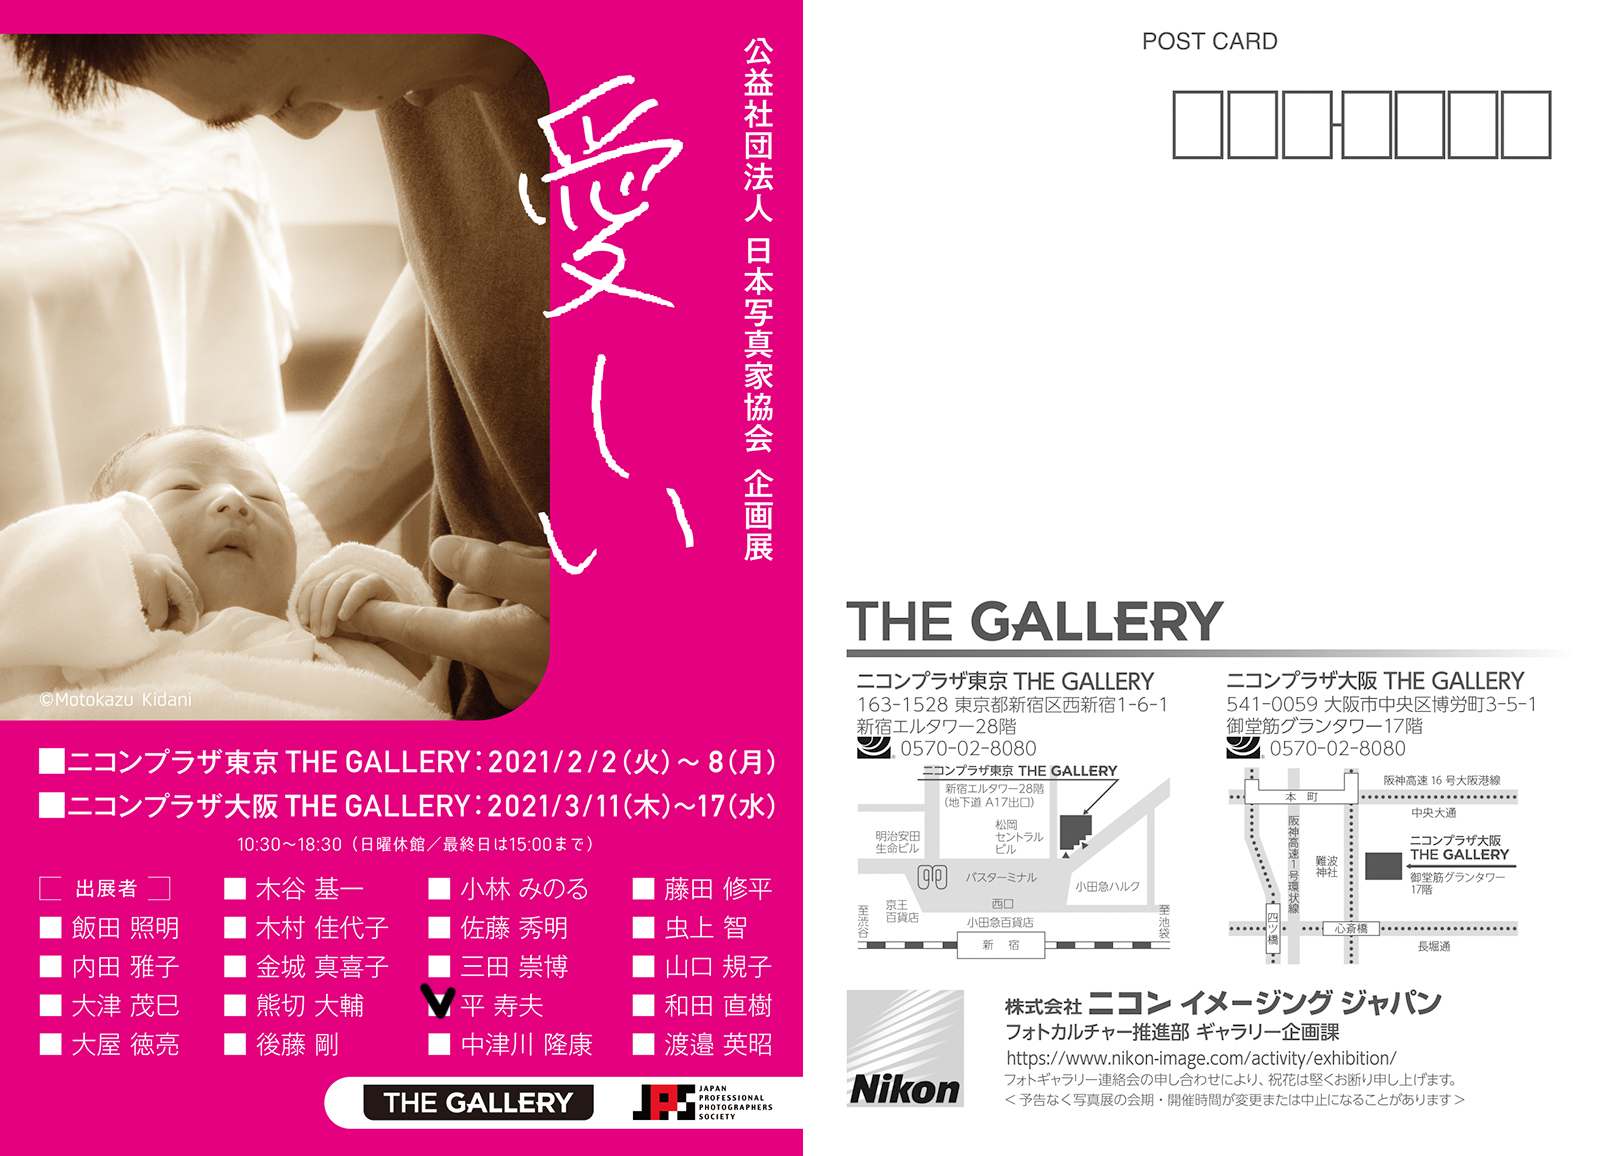 平 寿夫さんが２つの展覧会に出展されます カラーパーティウエスト公式サイト